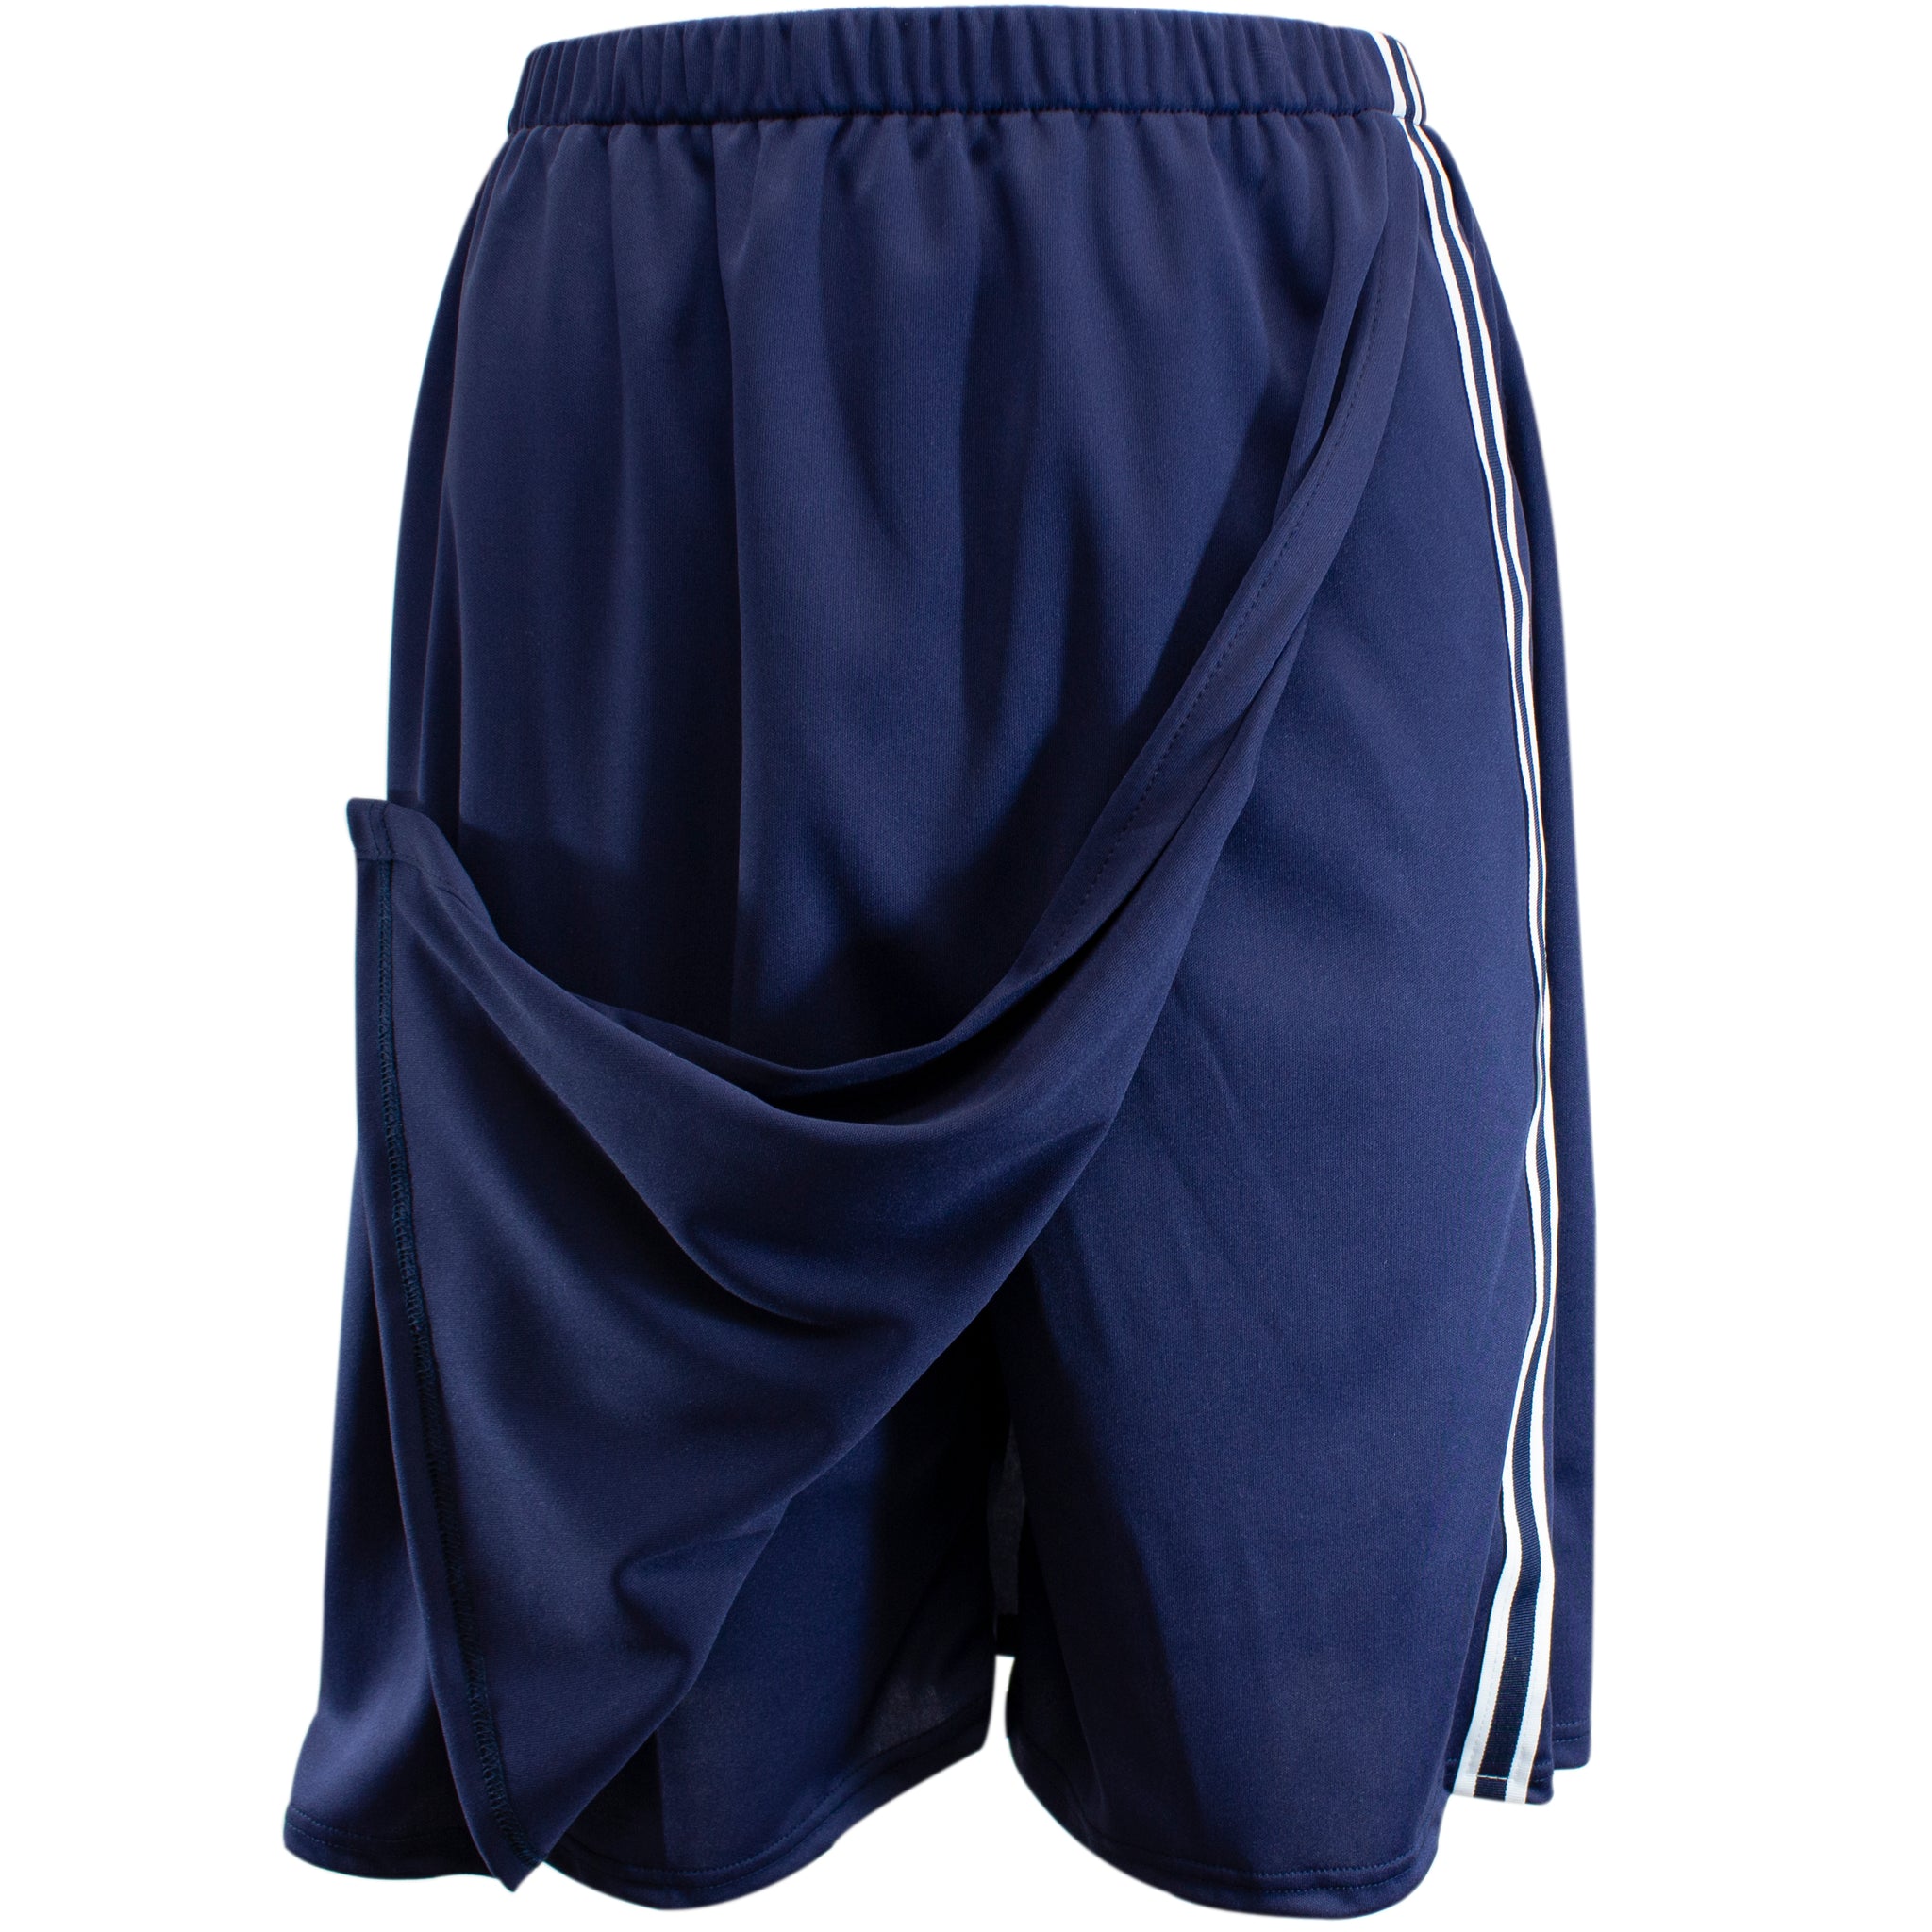 LM Girls and Women's Knee Length Skort Athletic Skirt – Good's